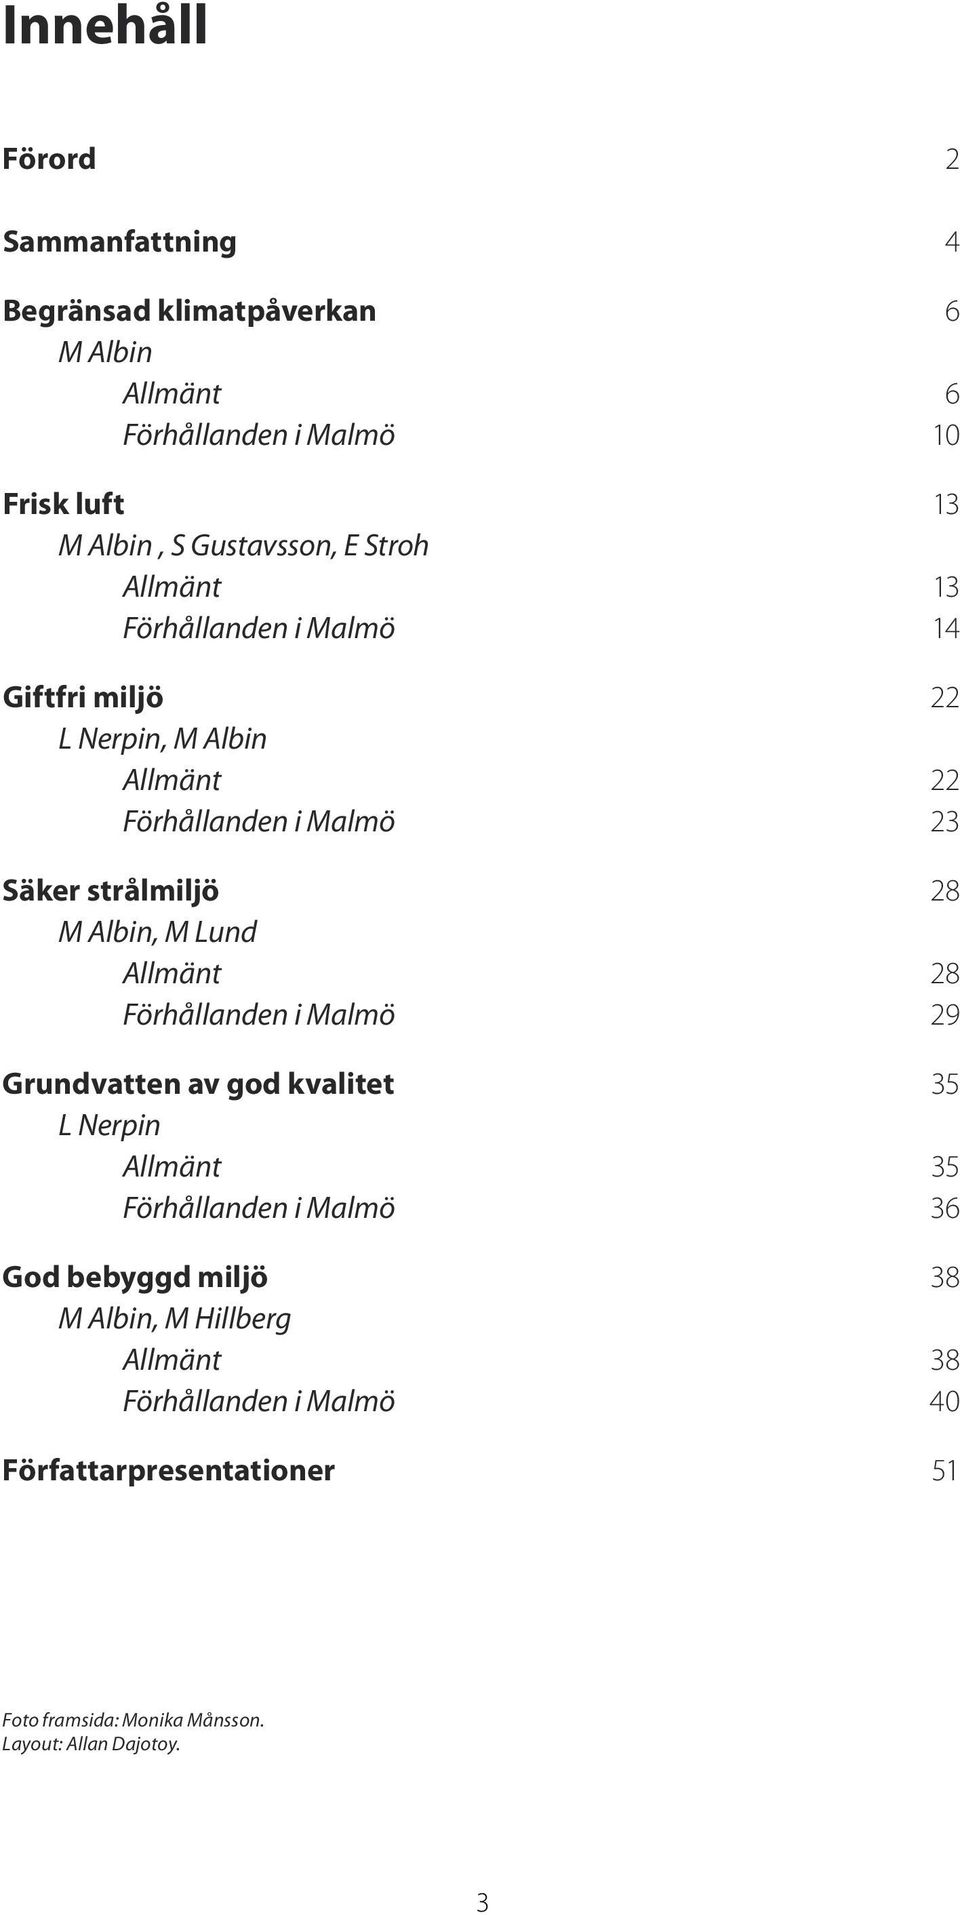 strålmiljö 28 M Albin, M Lund Allmänt 28 Förhållanden i Malmö 29 Grundvatten av god kvalitet 35 L Nerpin Allmänt 35 Förhållanden i Malmö